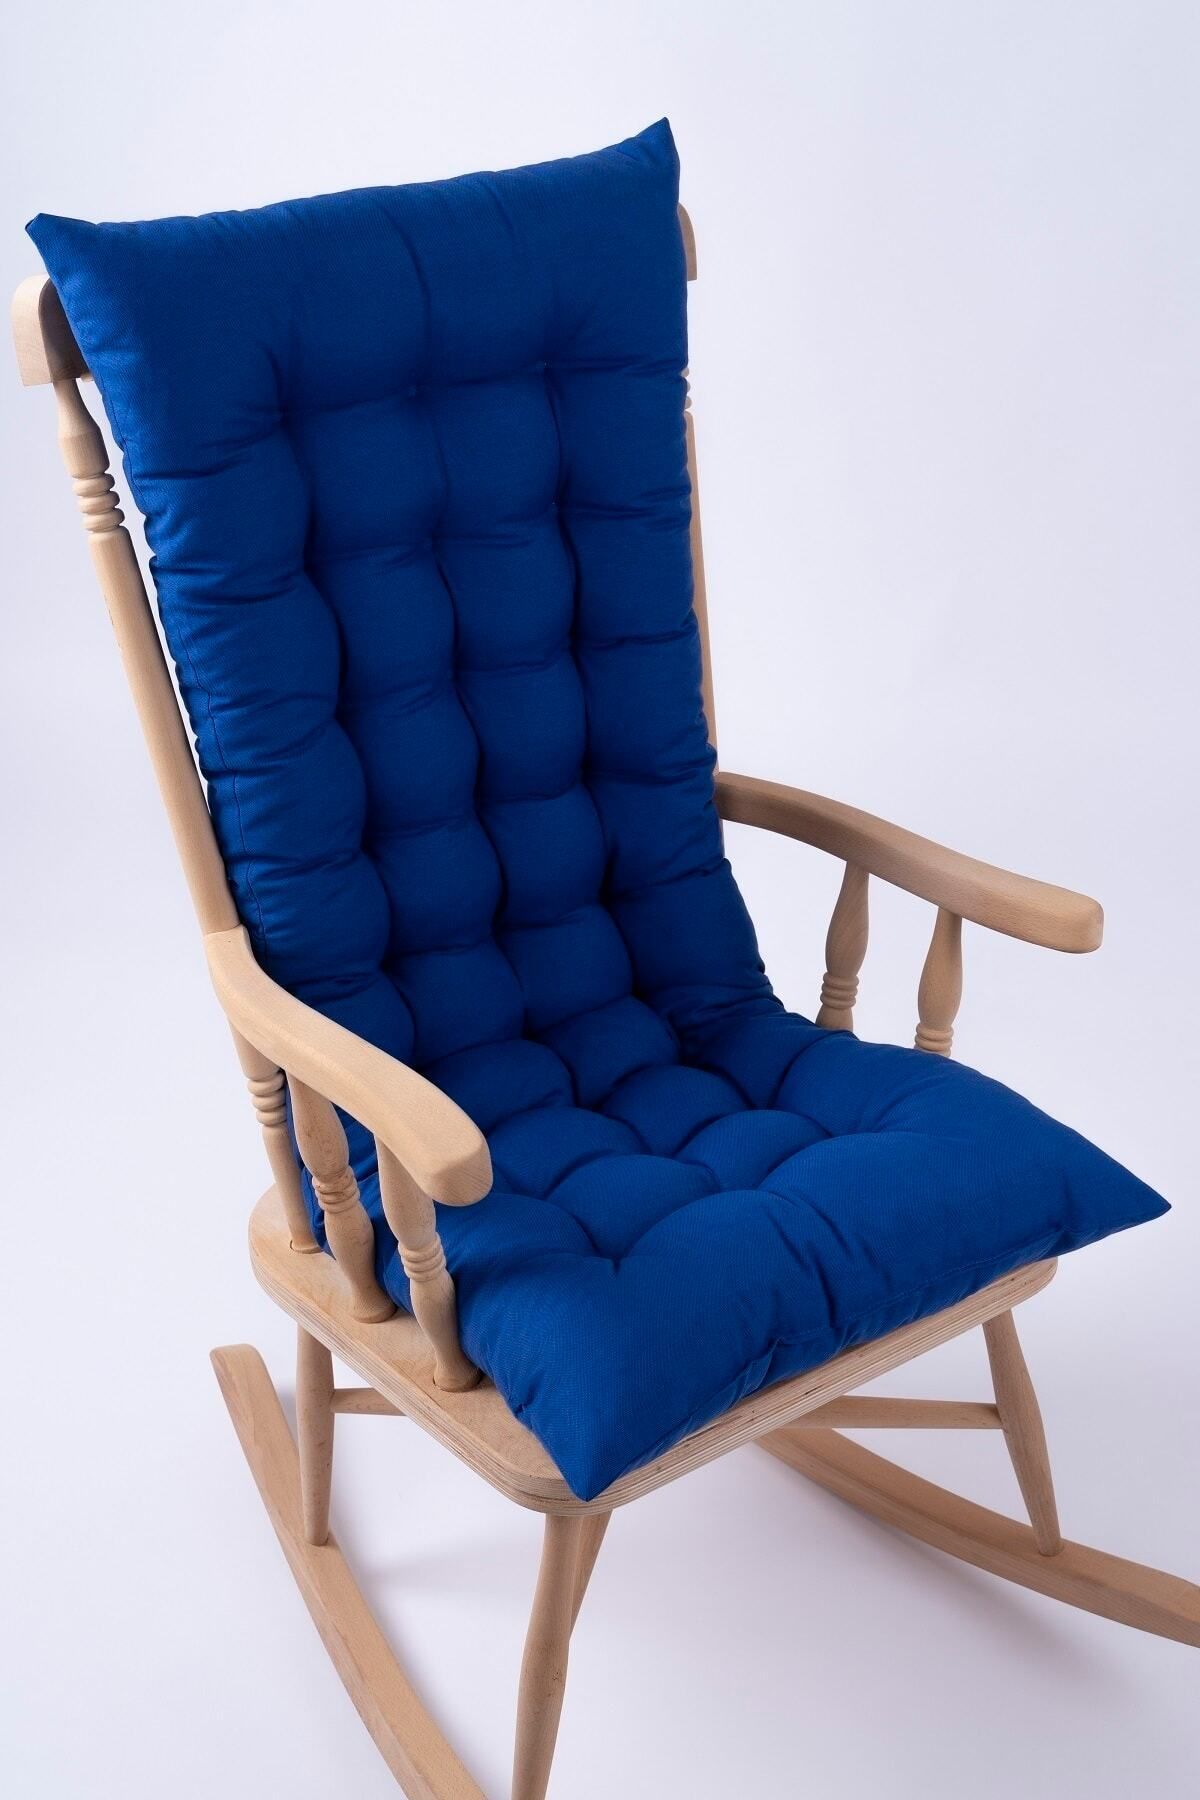 ALTINPAMUK Selen Lüx Sallanan Sandalye, Bank, Salıncak Minderi 120x50cm Mavi (SADECE MİNDER)